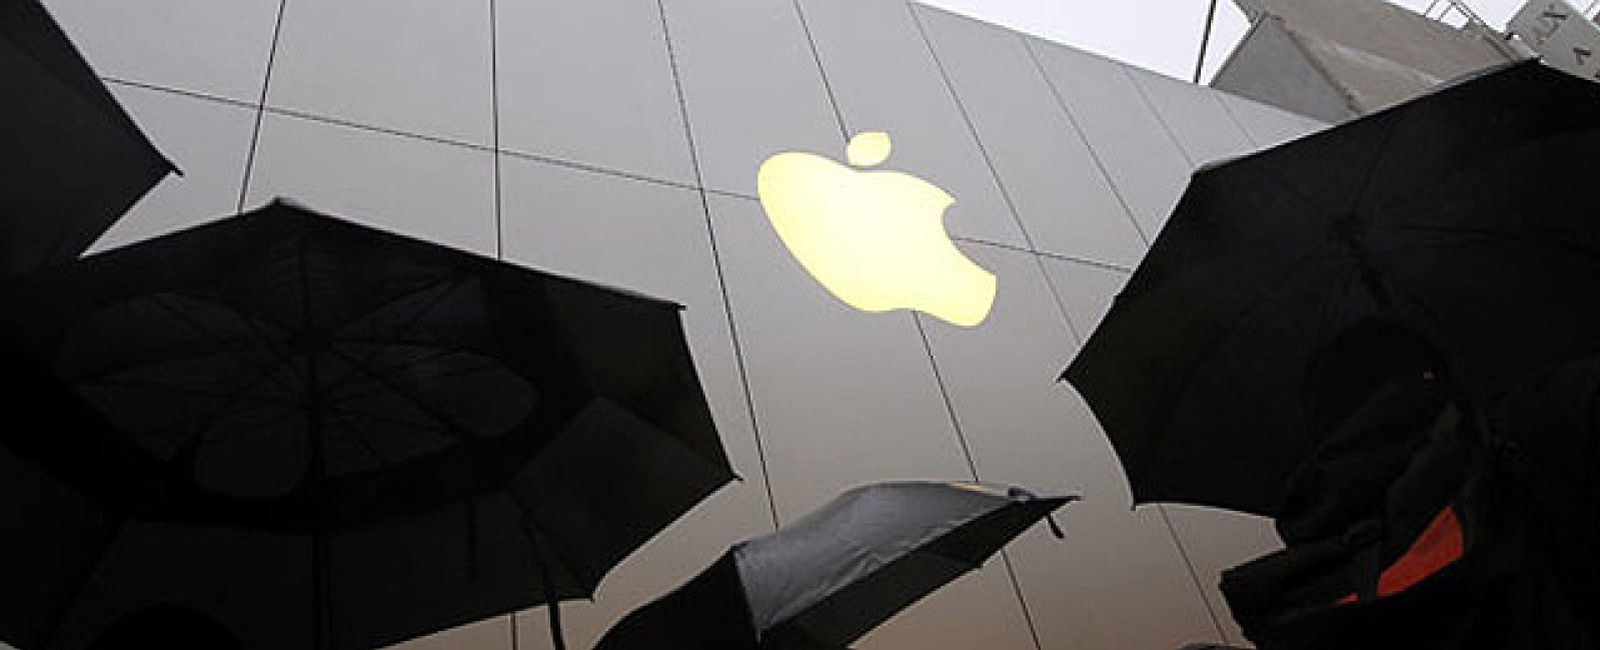 Foto: Apple declara pérdidas en España pese a lograr ingresos récord en 2012